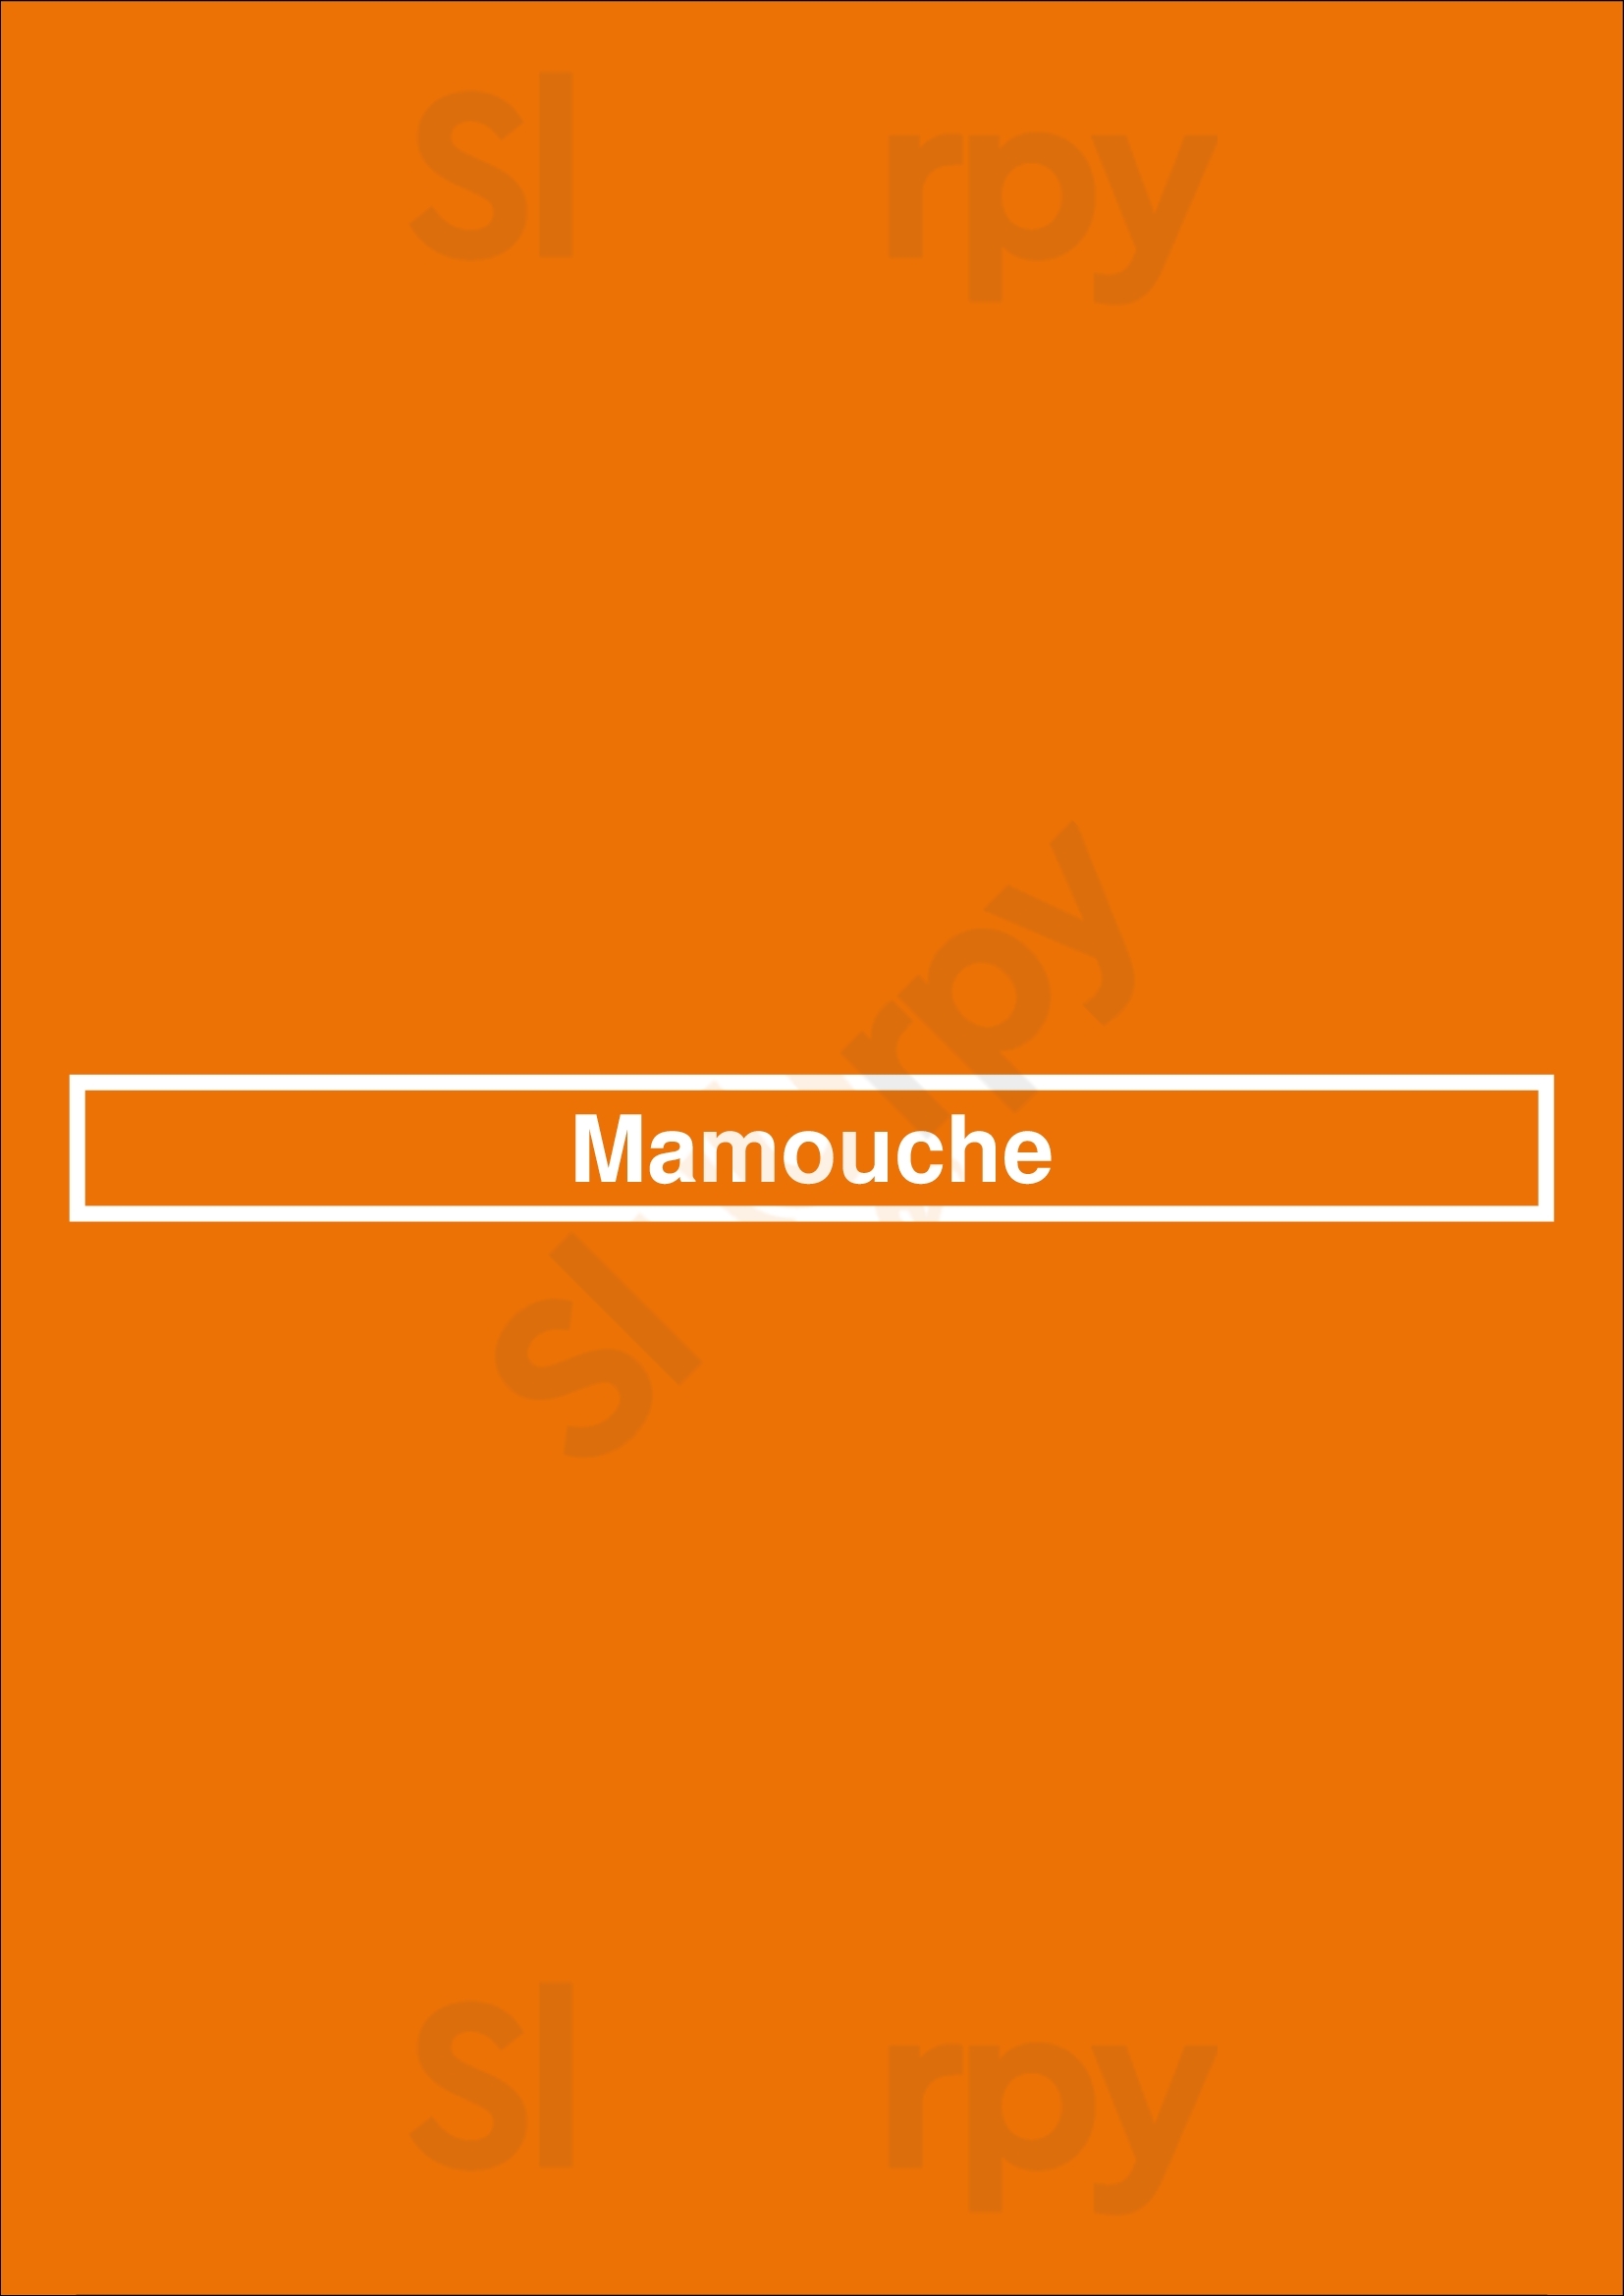 Mamouche Amsterdam Menu - 1